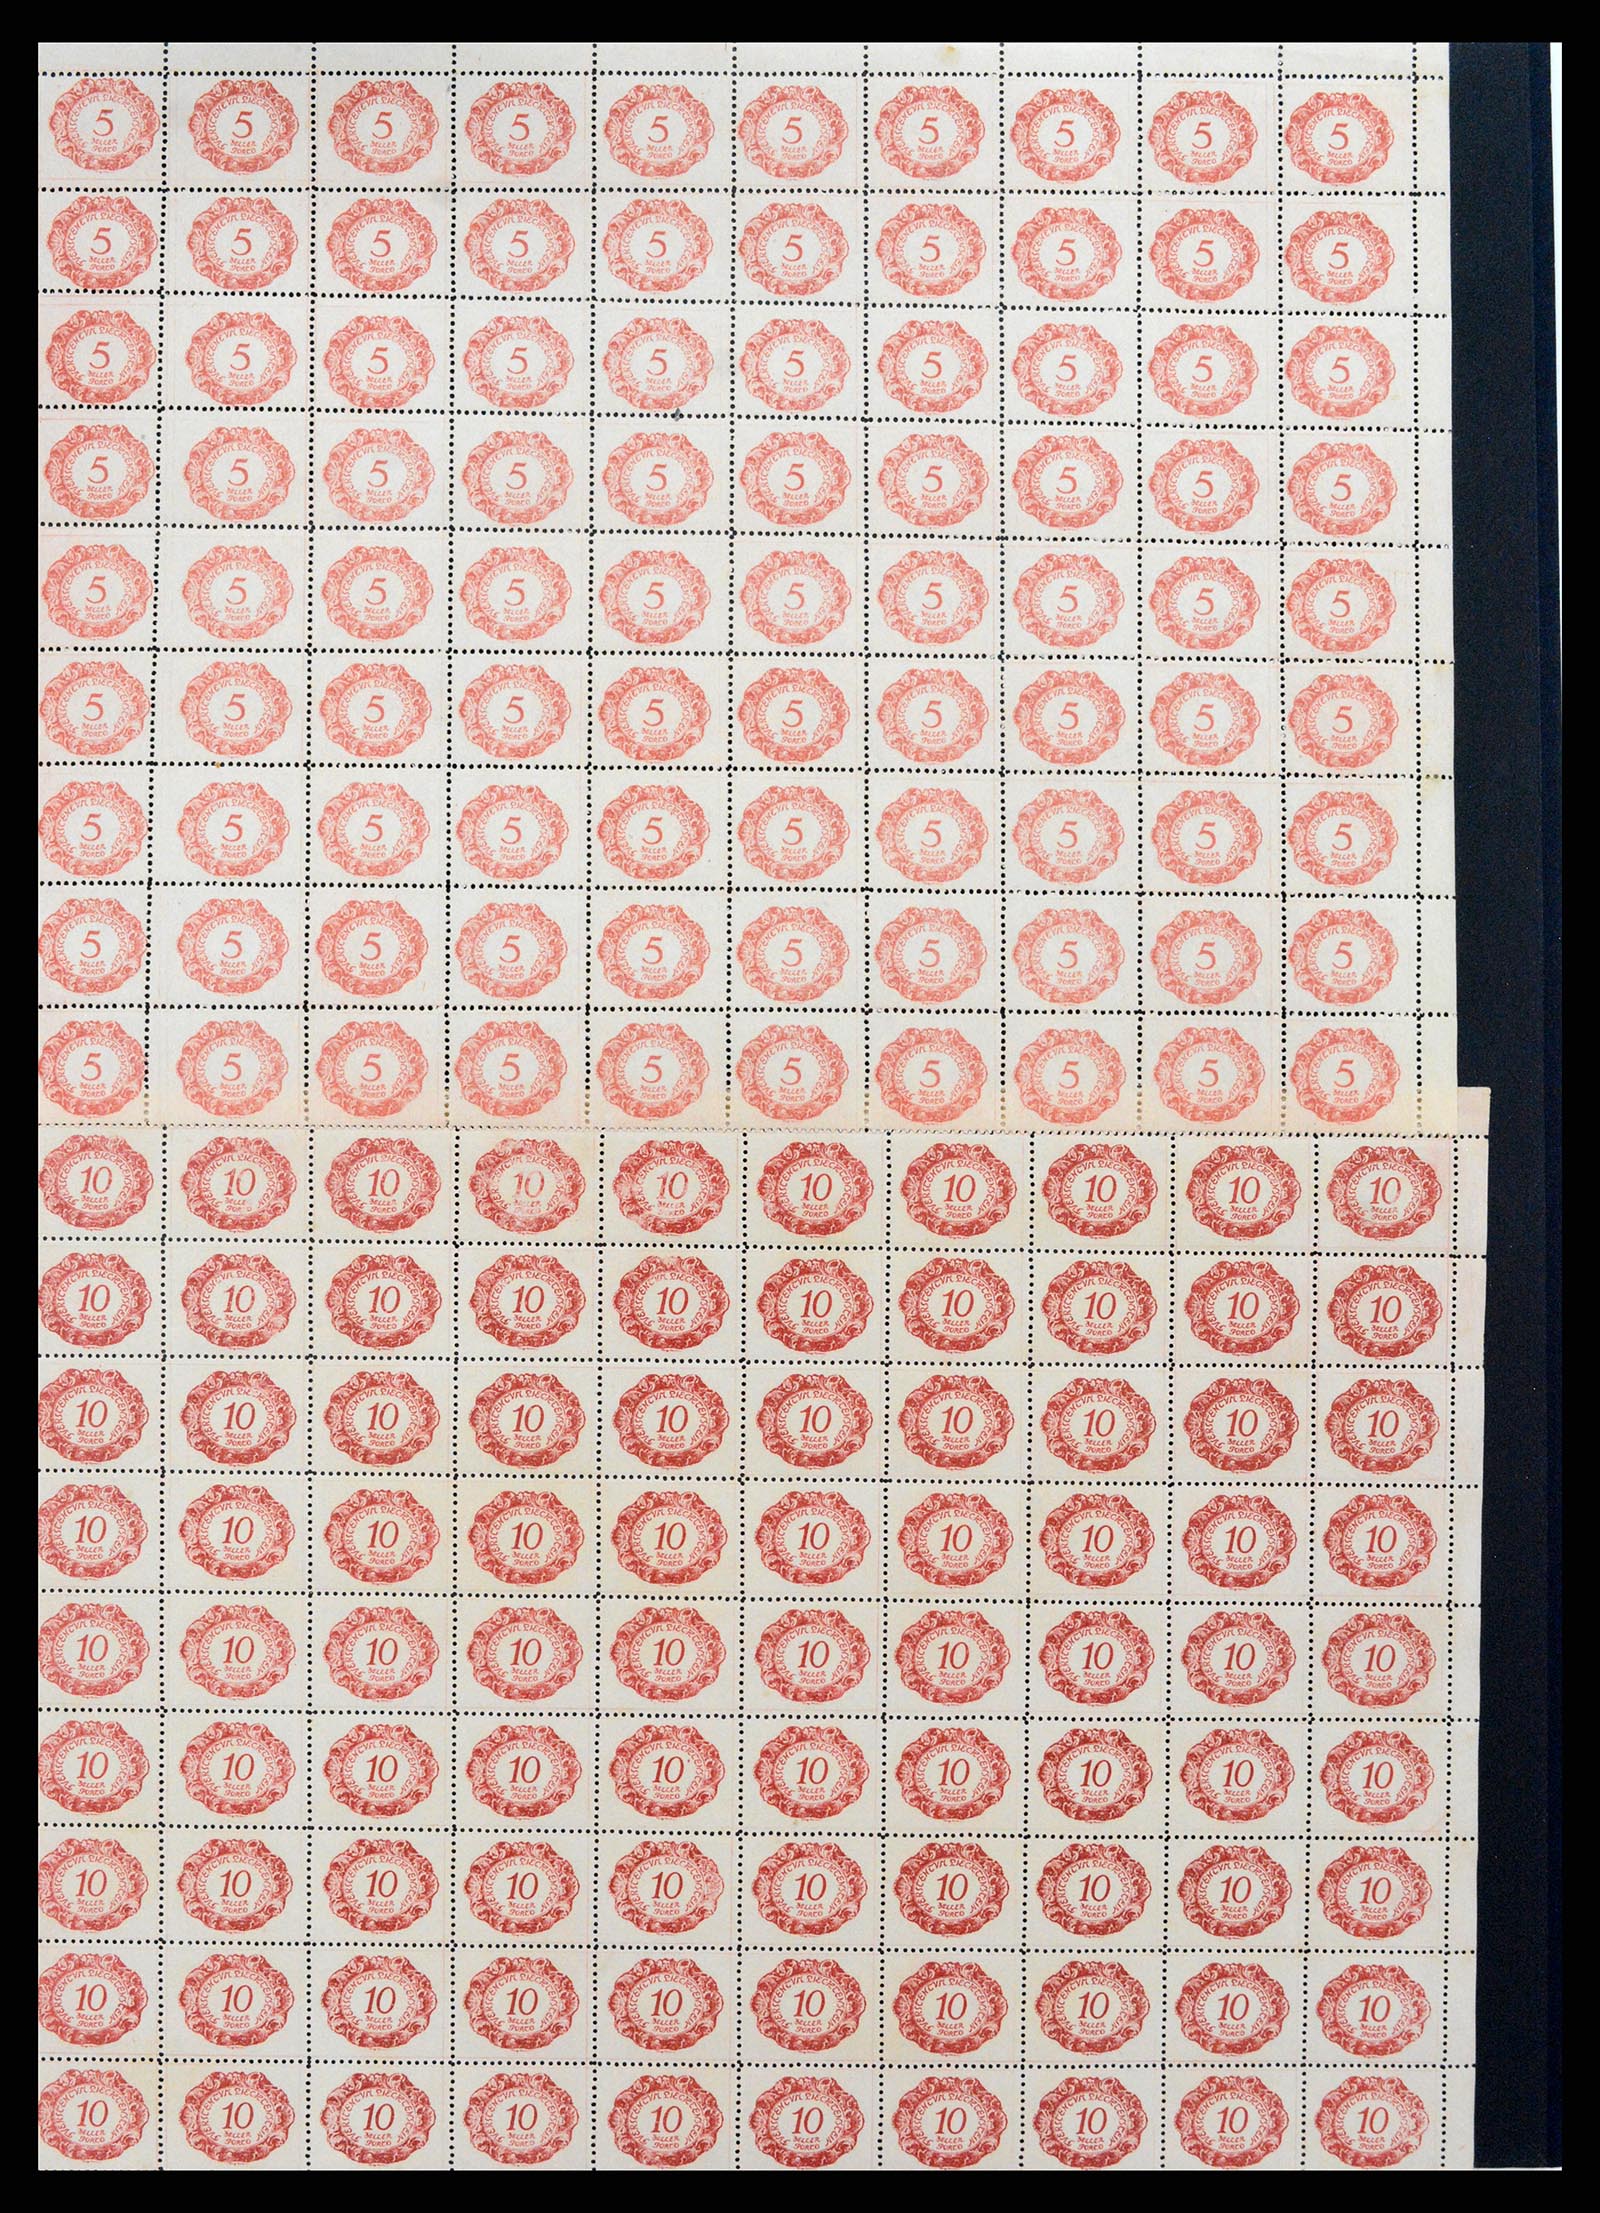 37150 1697 - Stamp collection 37150 Liechtenstein supercollection 1912-1962.